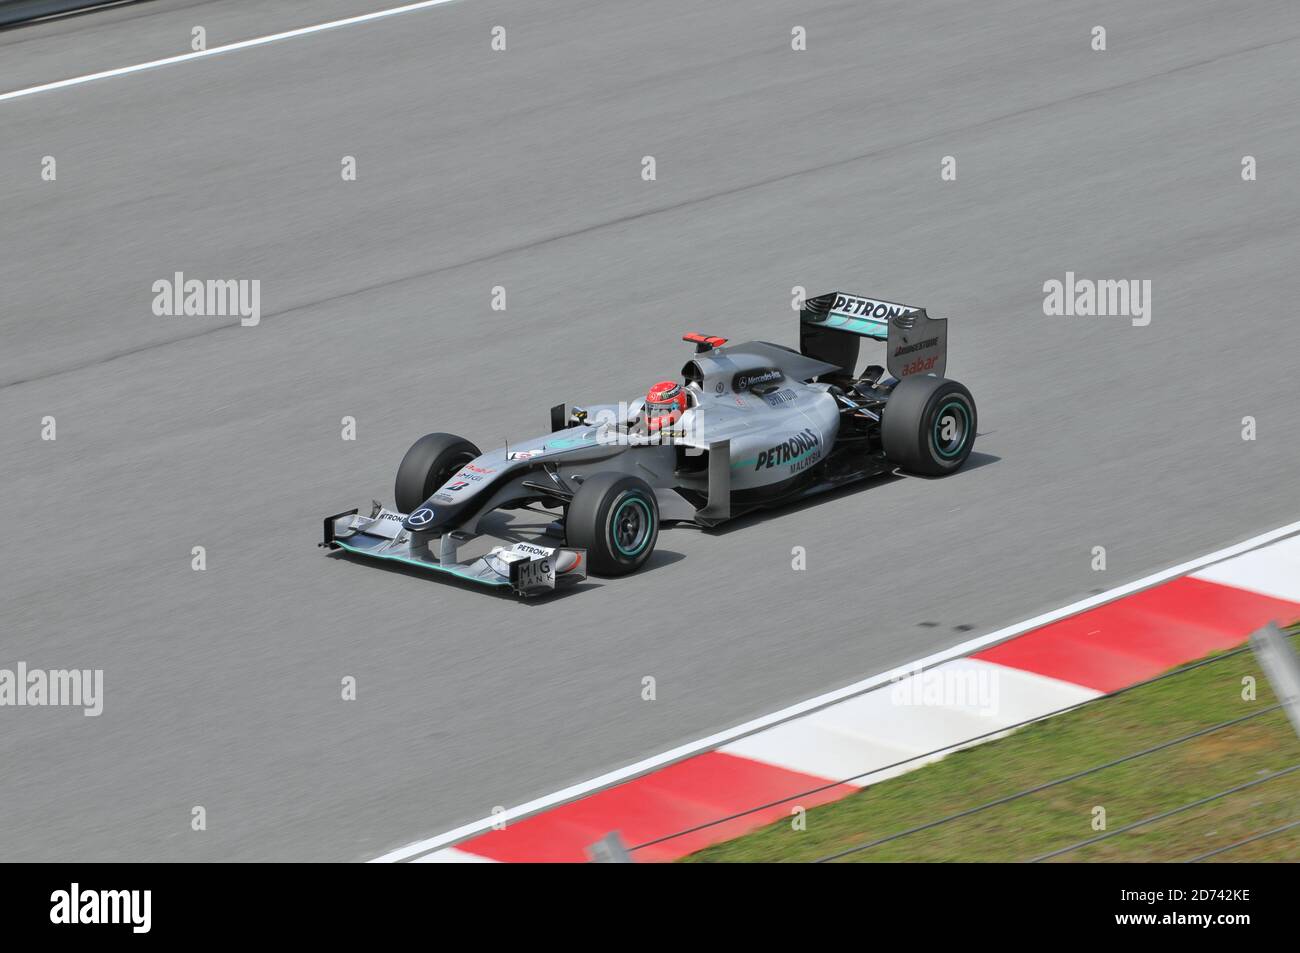 SEPANG, MALAISIE - 2 AVRIL : Michael Schumacher, pilote de Formule 1 Mercedes, conduit lors de la première séance de pratique au Setang F1 circulaire Banque D'Images